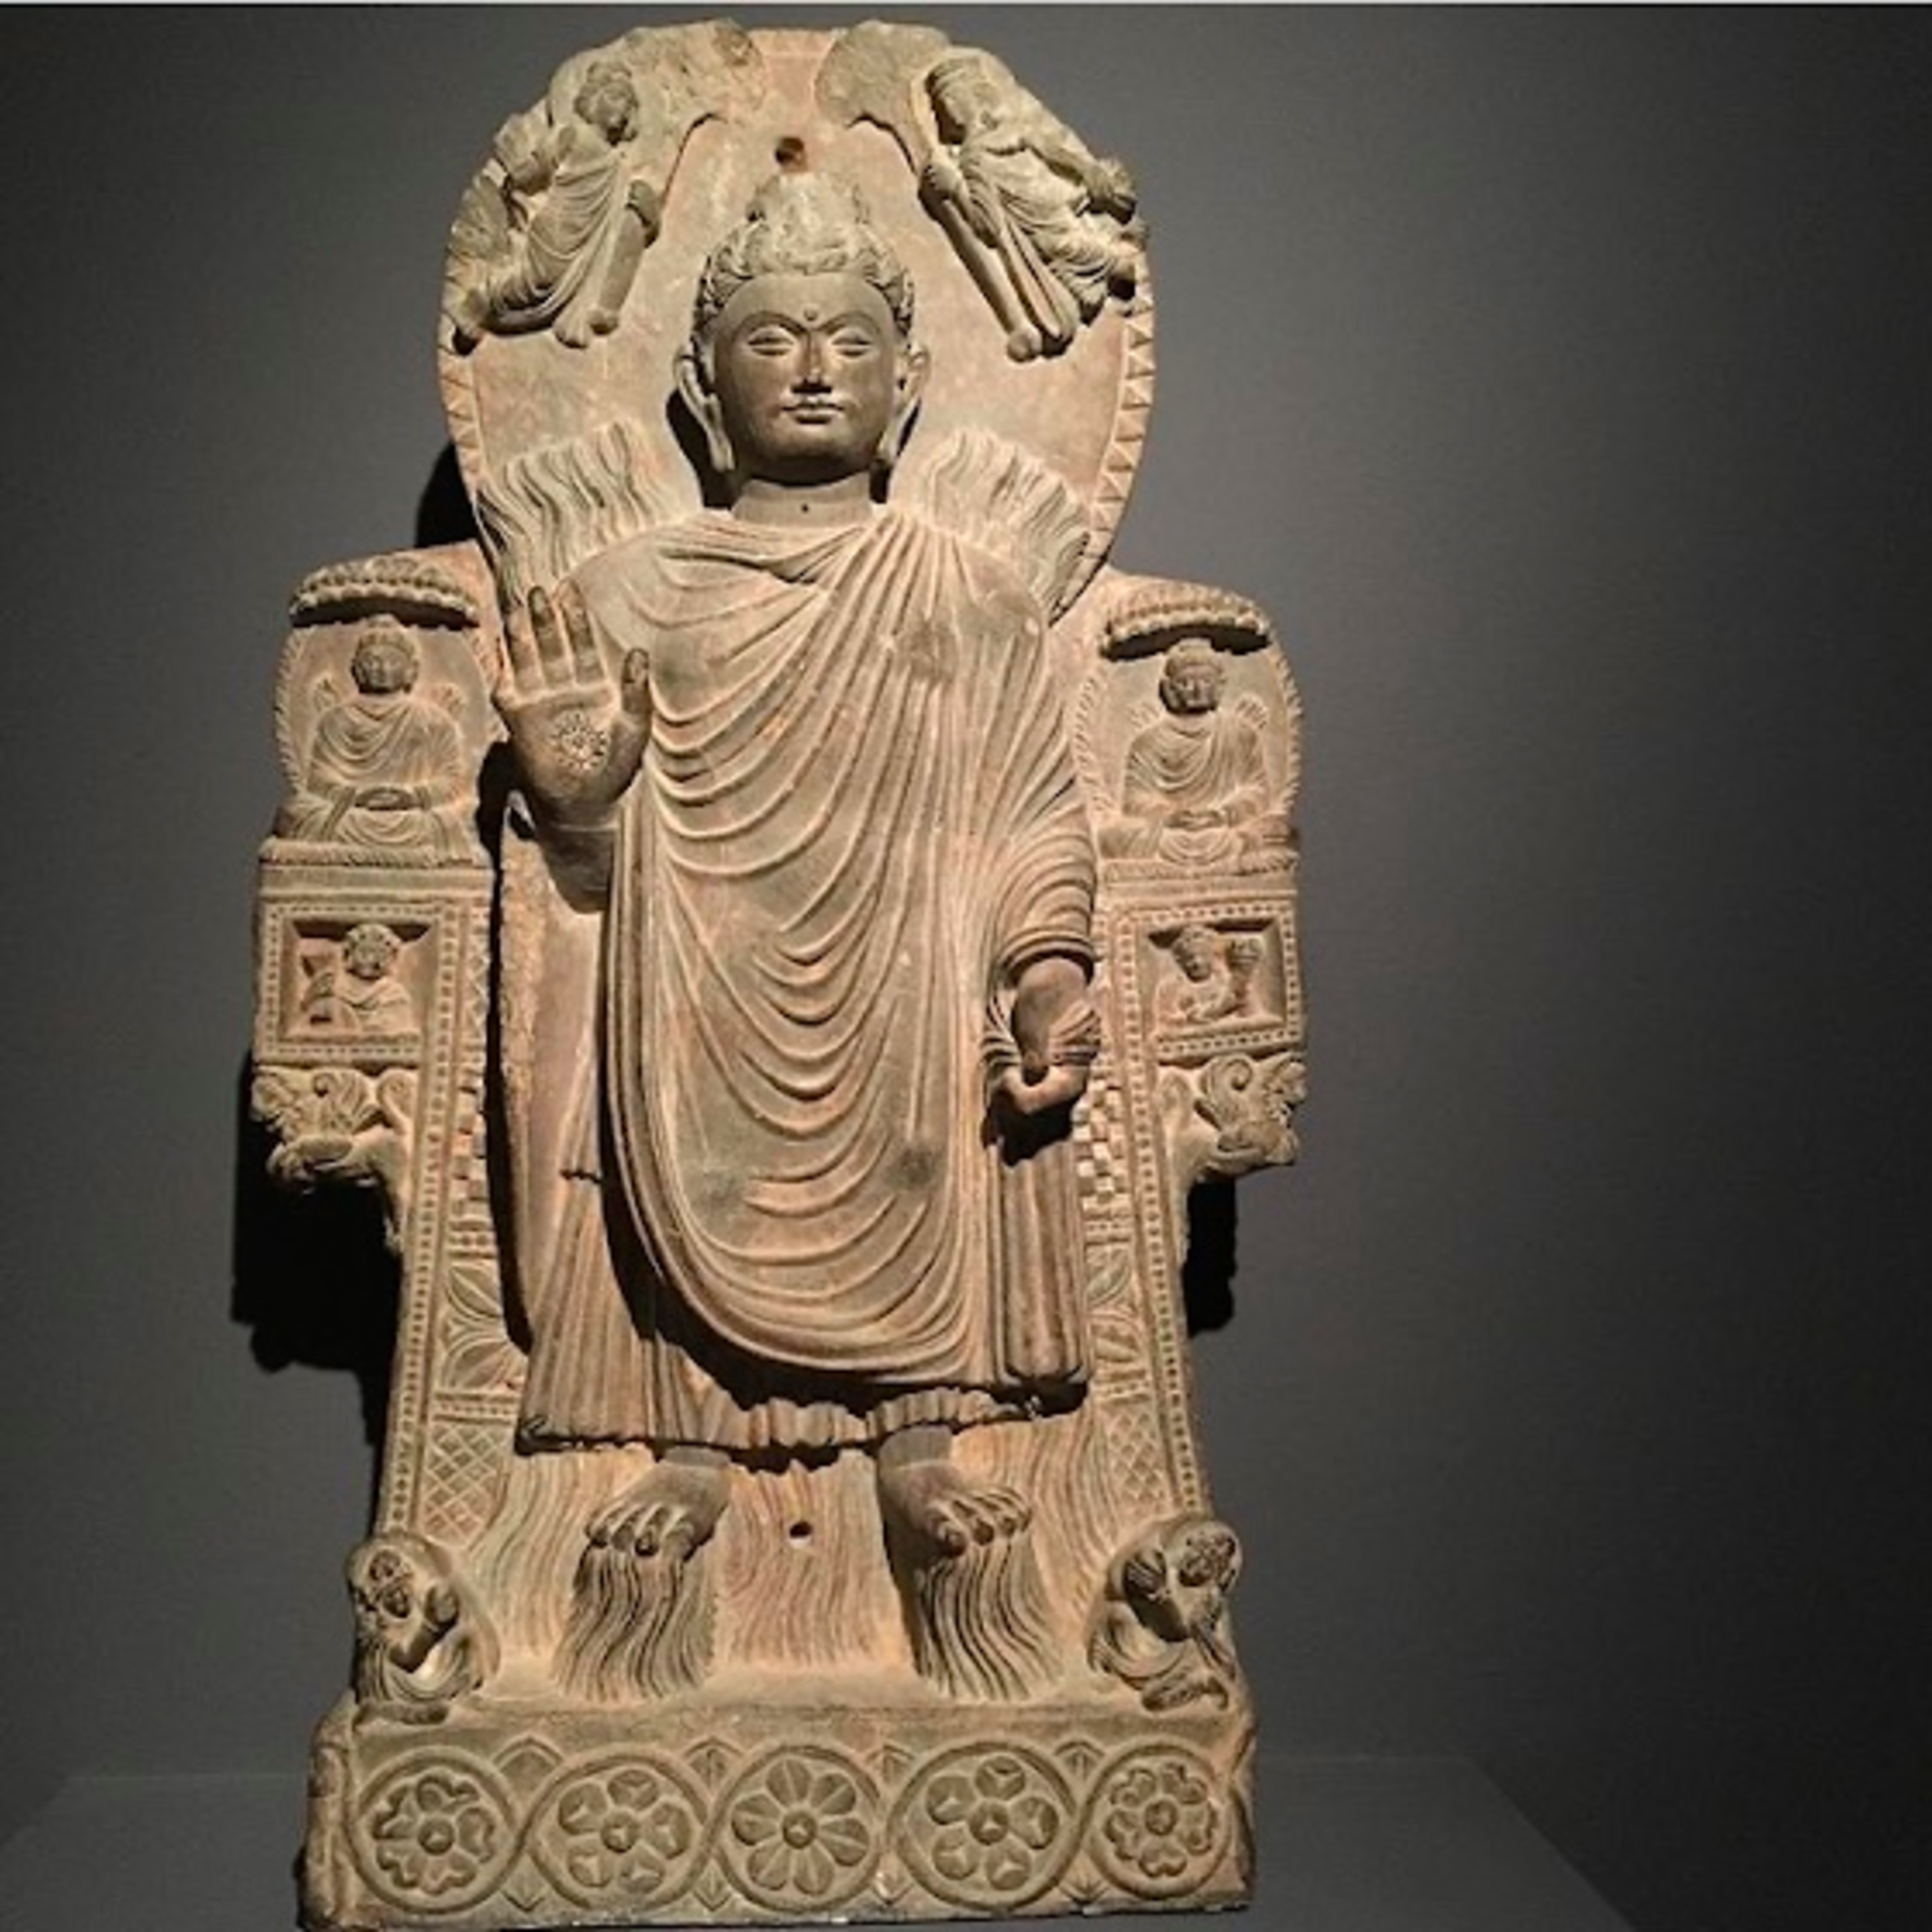 #67 El arte de Gandhara - Historia del arte con Kenza